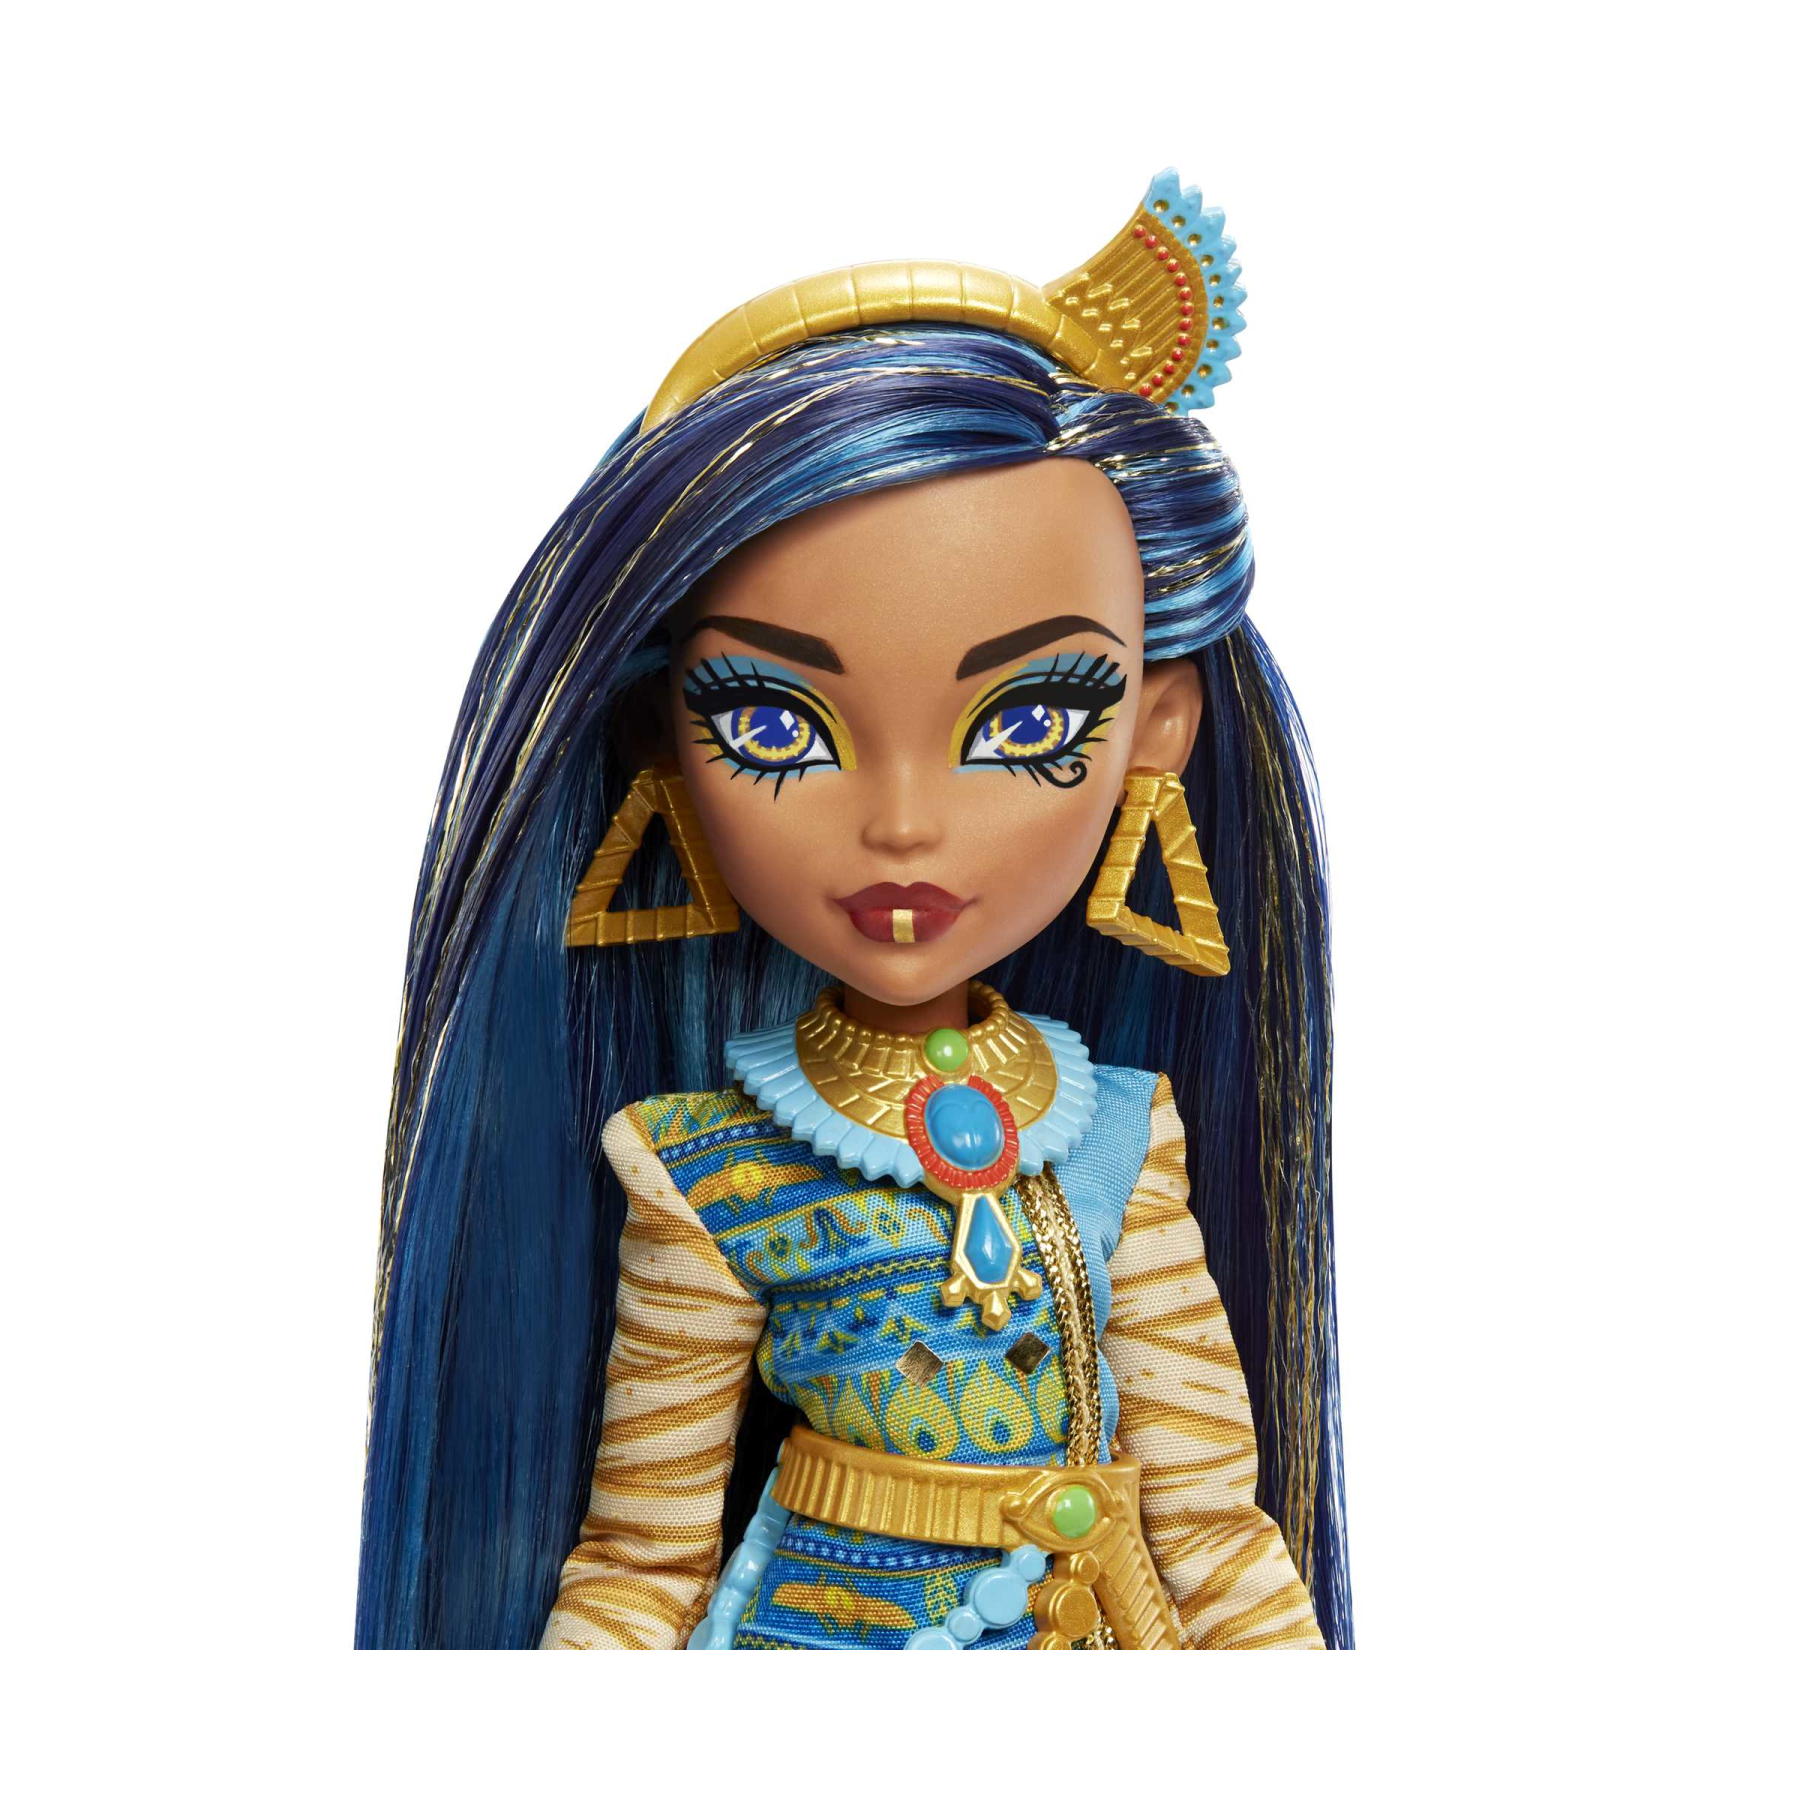 Monster high - cleo de nile, bambola snodata alla moda, dai capelli con ciocche blu, con accessori e cagnolino, giocattolo per bambini, 4+ anni, hhk54 - Monster High